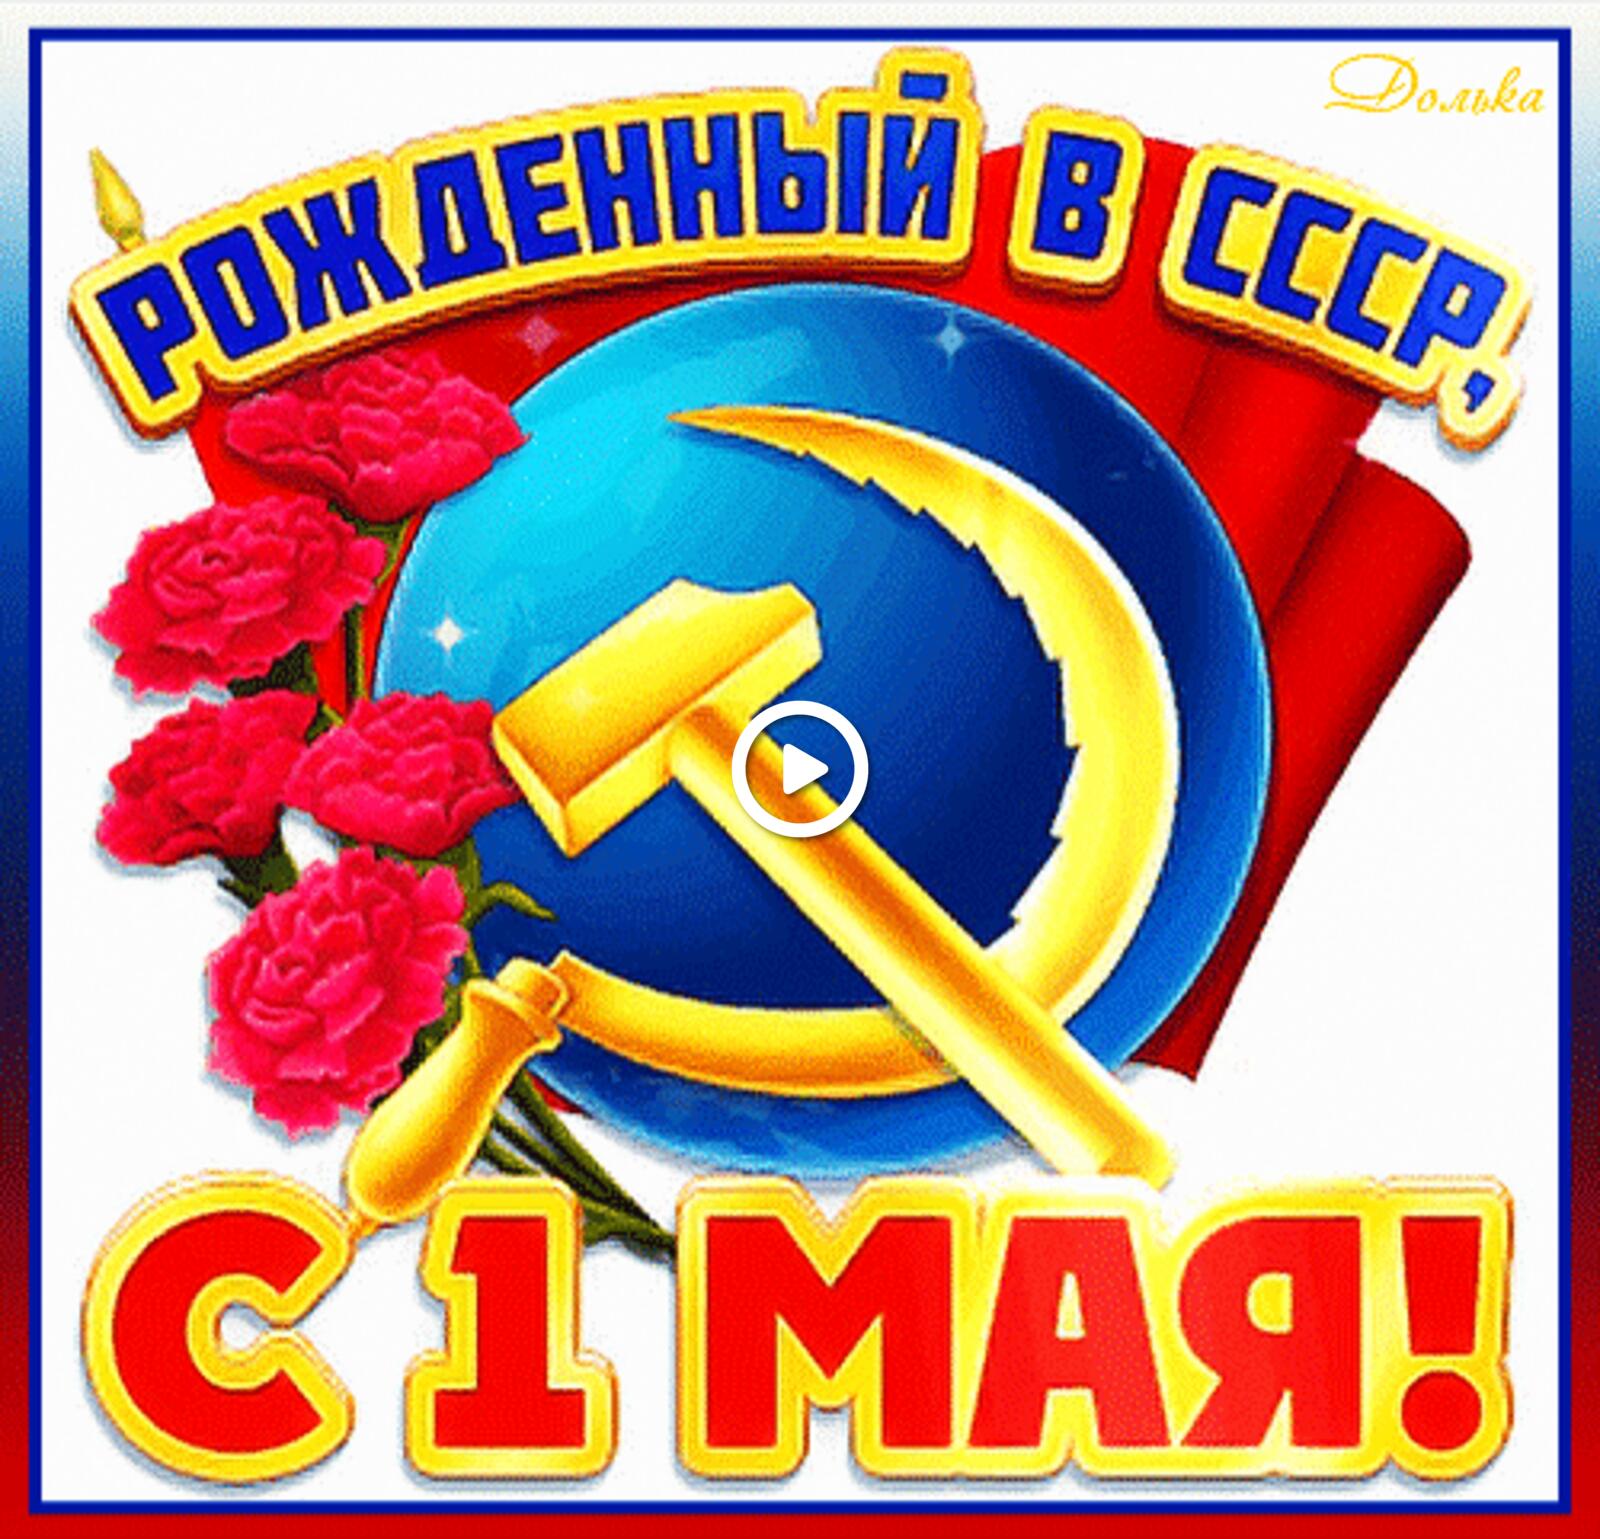 一张以截止到5月1日 假日 苏联为主题的明信片